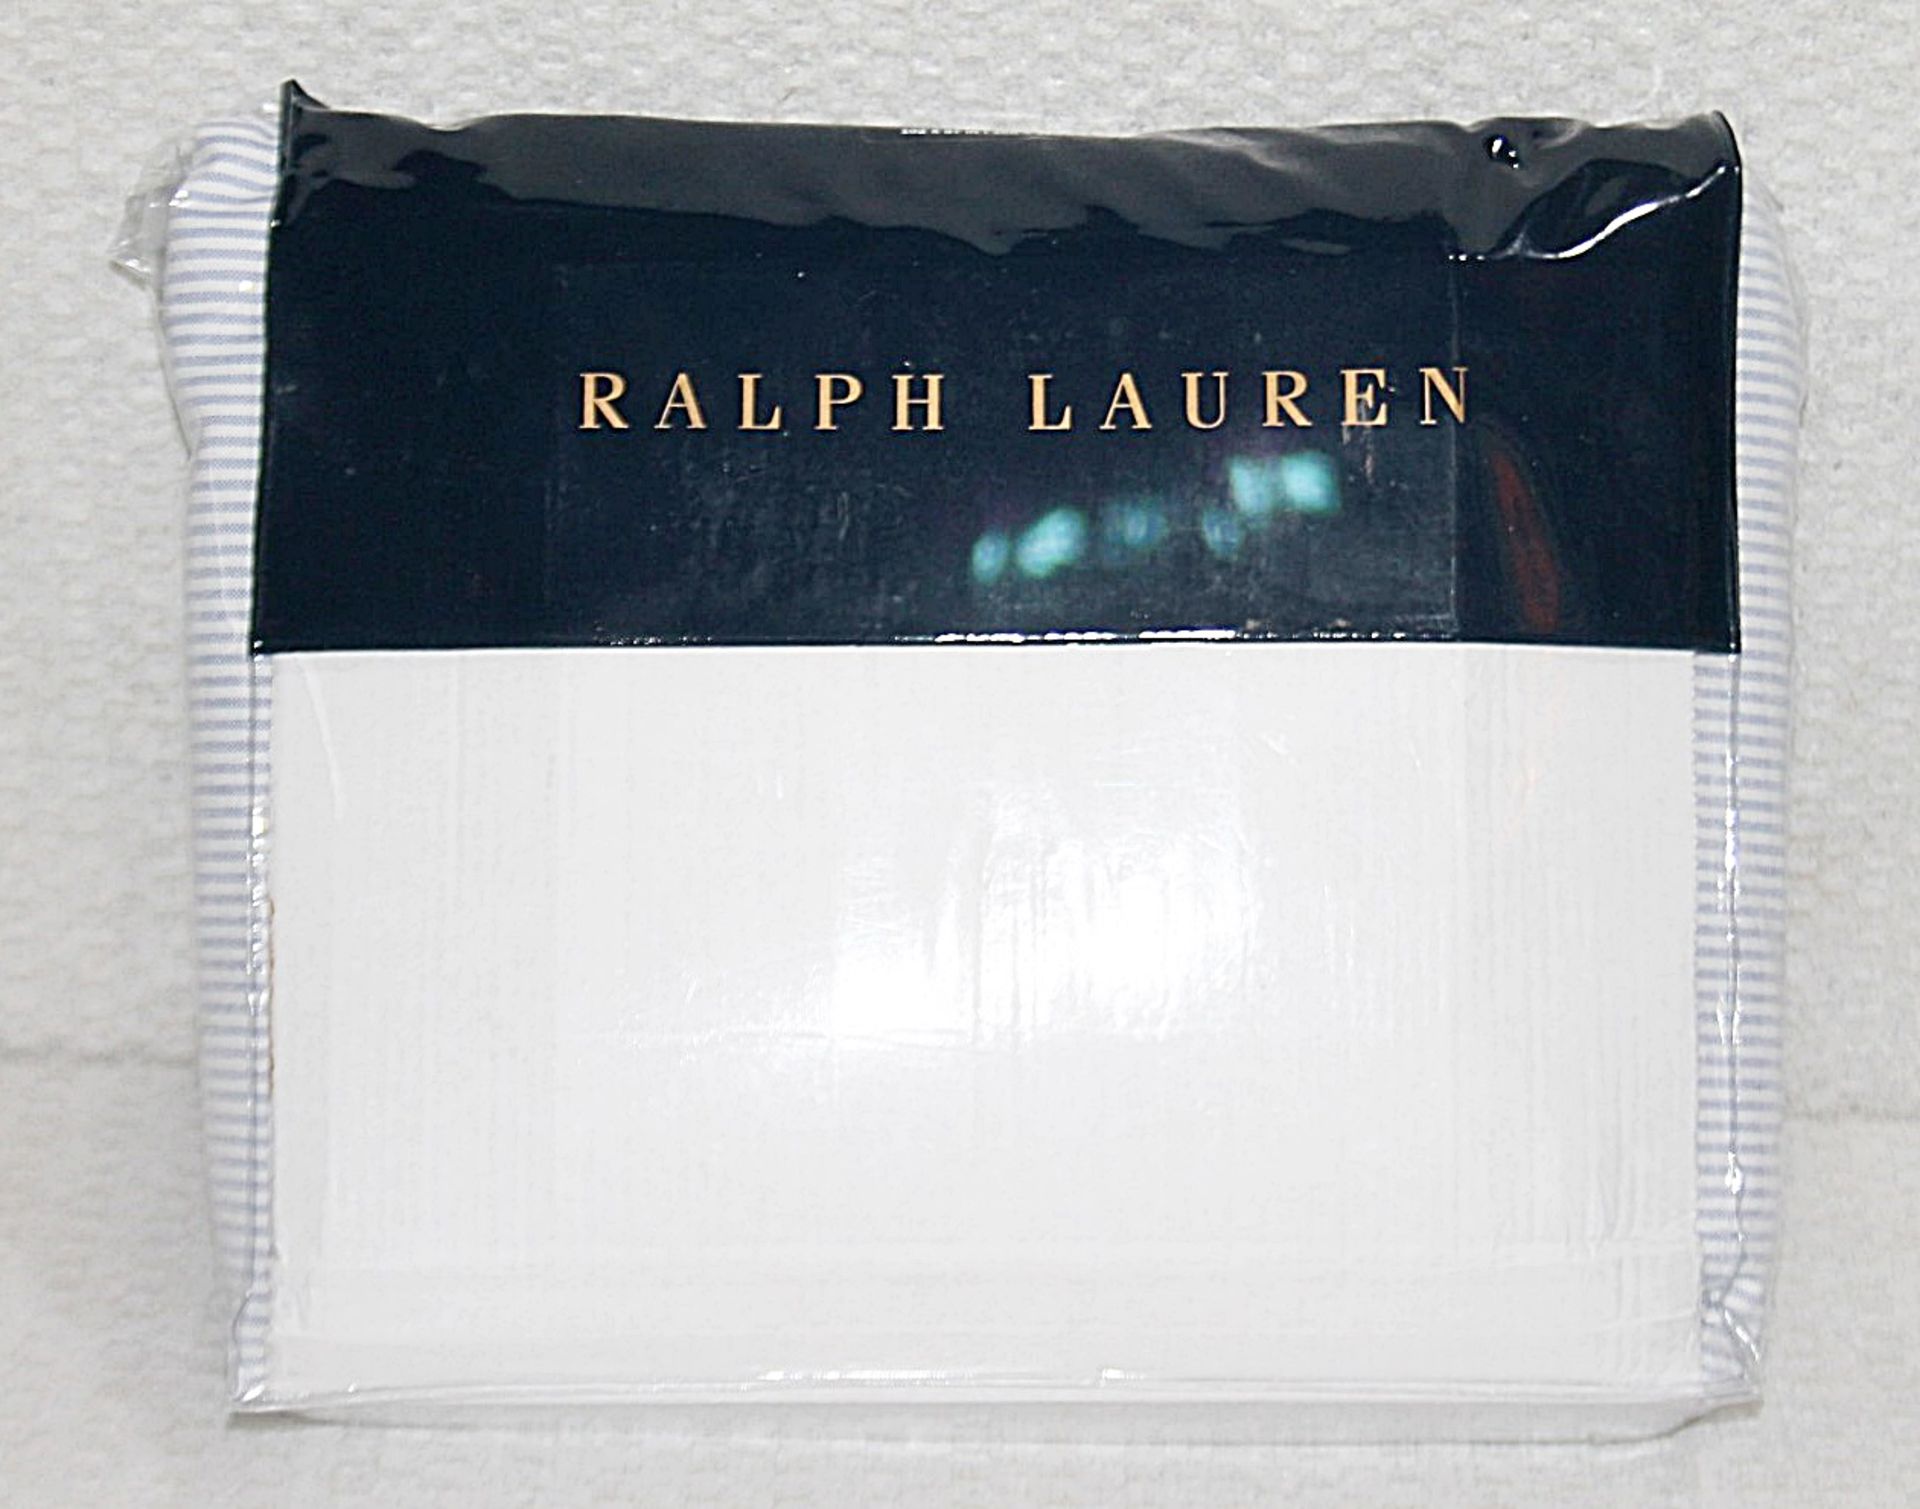 1 x RALPH LAUREN HOME 'Oxford Blue' Cotton Super King Duvet Cover (260cm x 220cm) - Original - Image 2 of 5